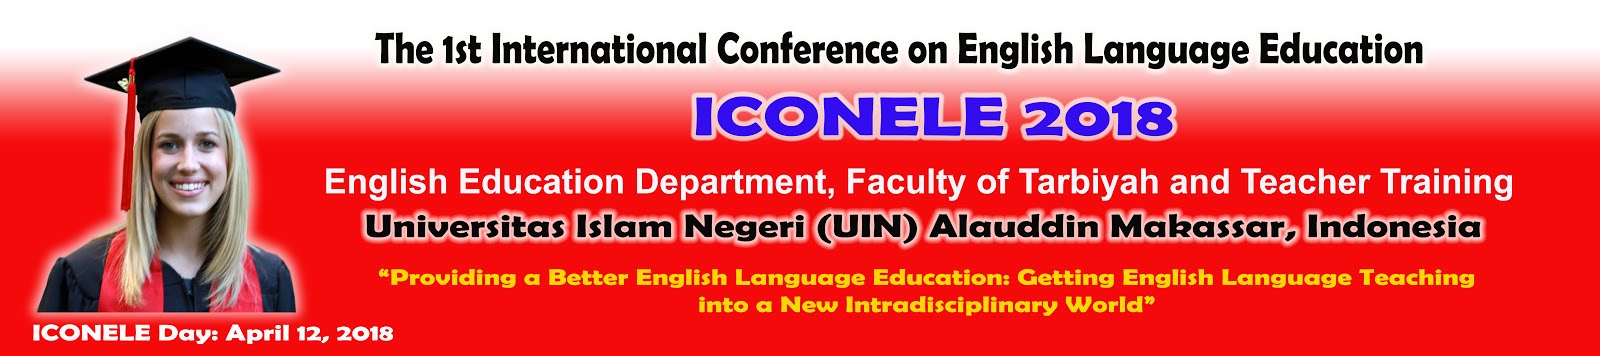 International Conference on English Language Education 2018